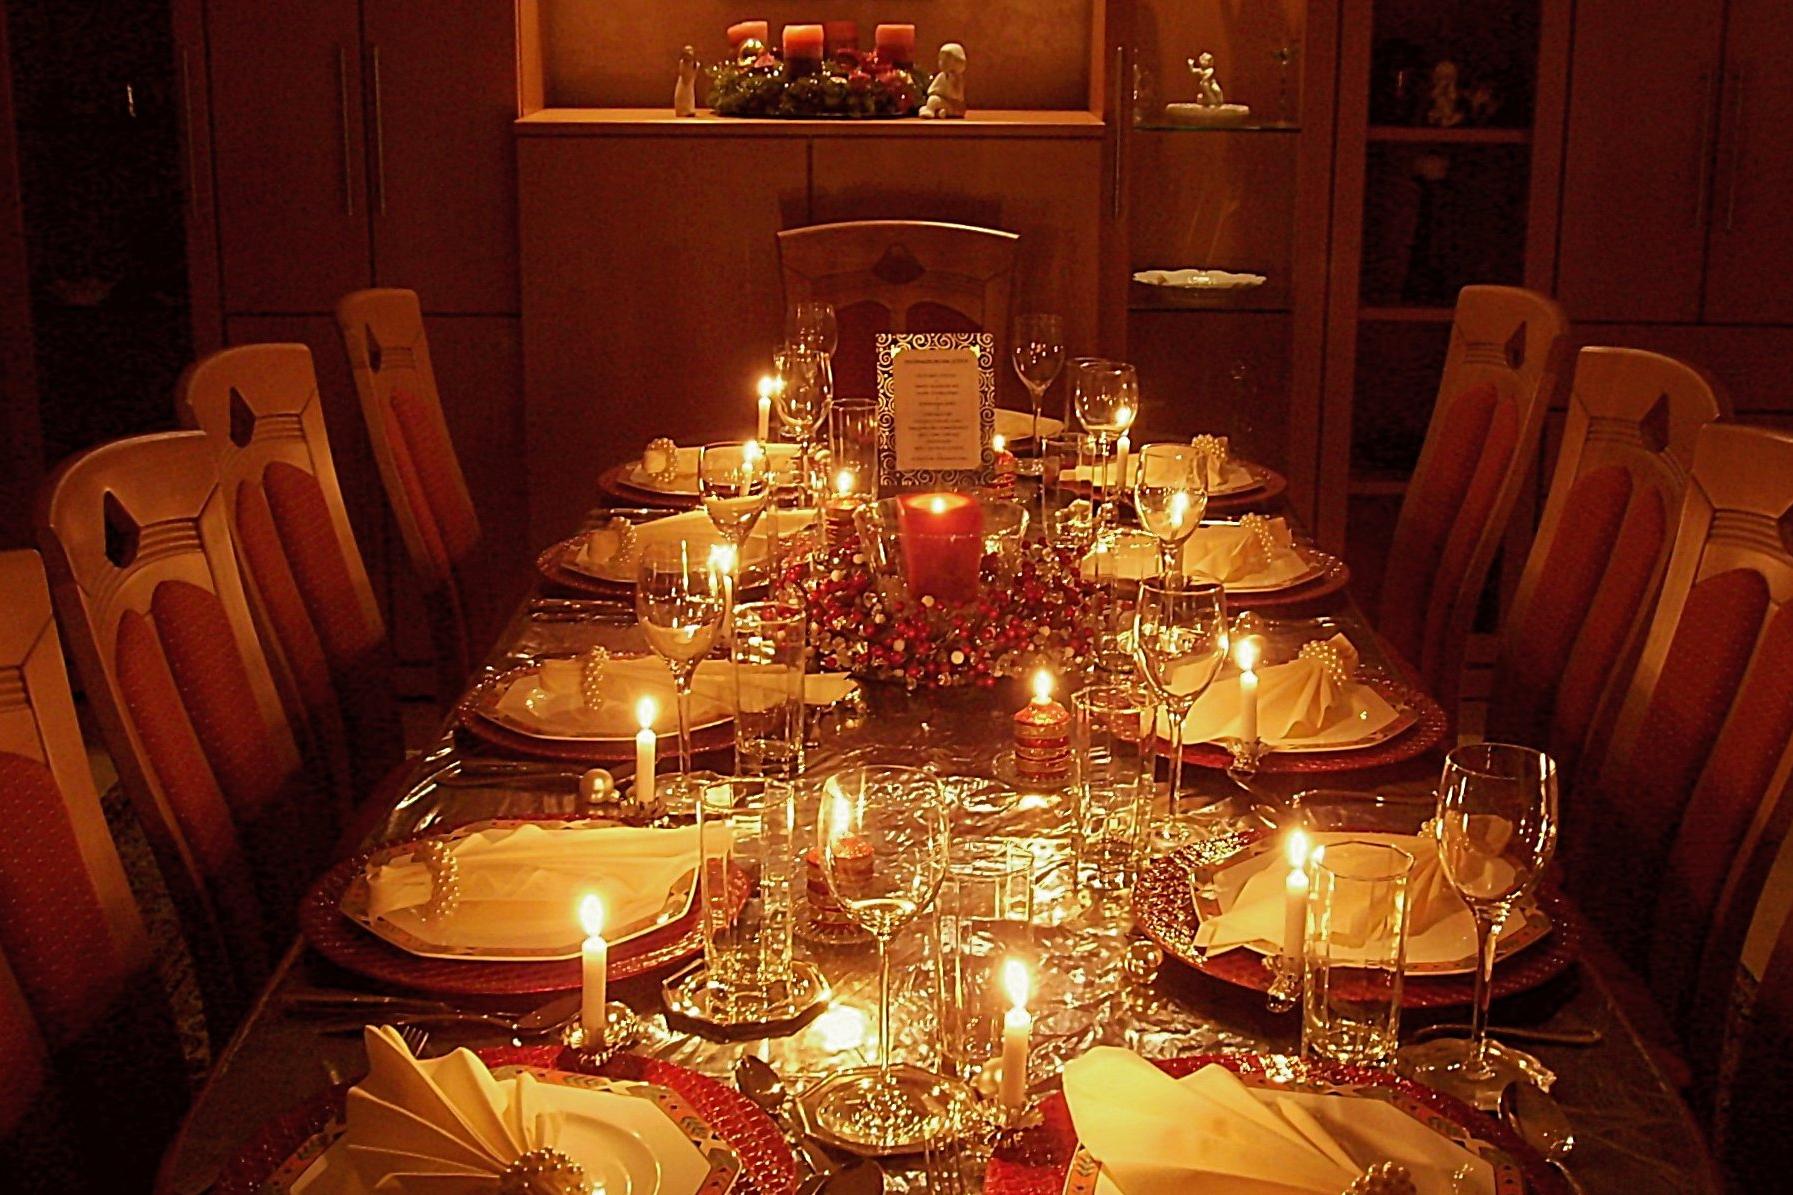 Weihnachtlich gedeckter Tisch bei Kerzenschein